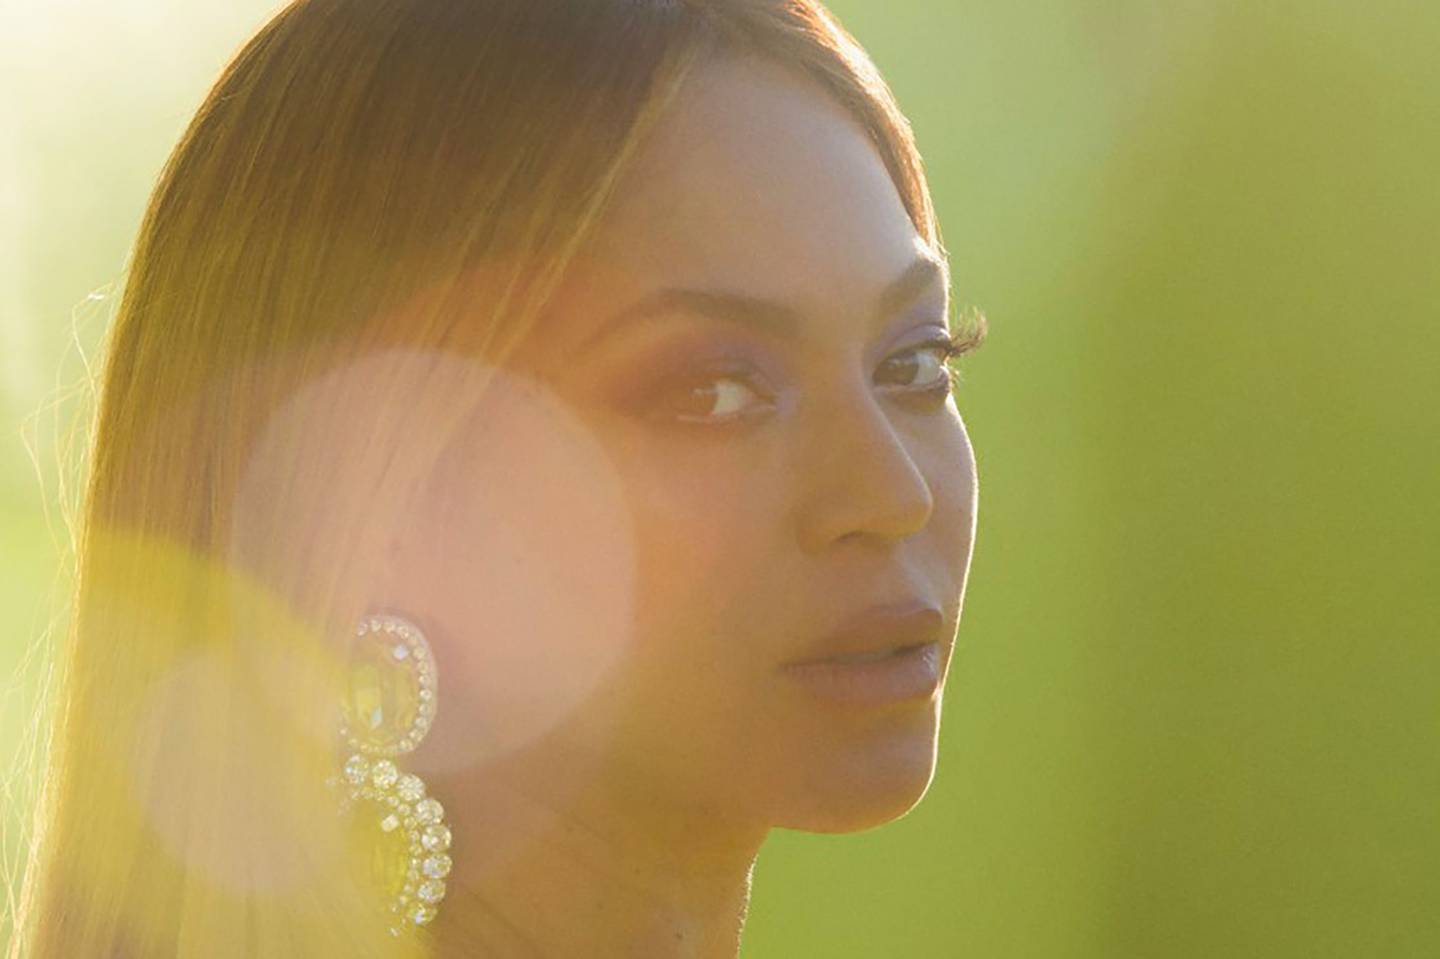 En su canción, Beyoncé habla en nombre de la generación millennial y de sus compañeros más jóvenes de la Generación Z. Fotógrafo: Mason Poole/AMPAS/Getty Images North Americadfd